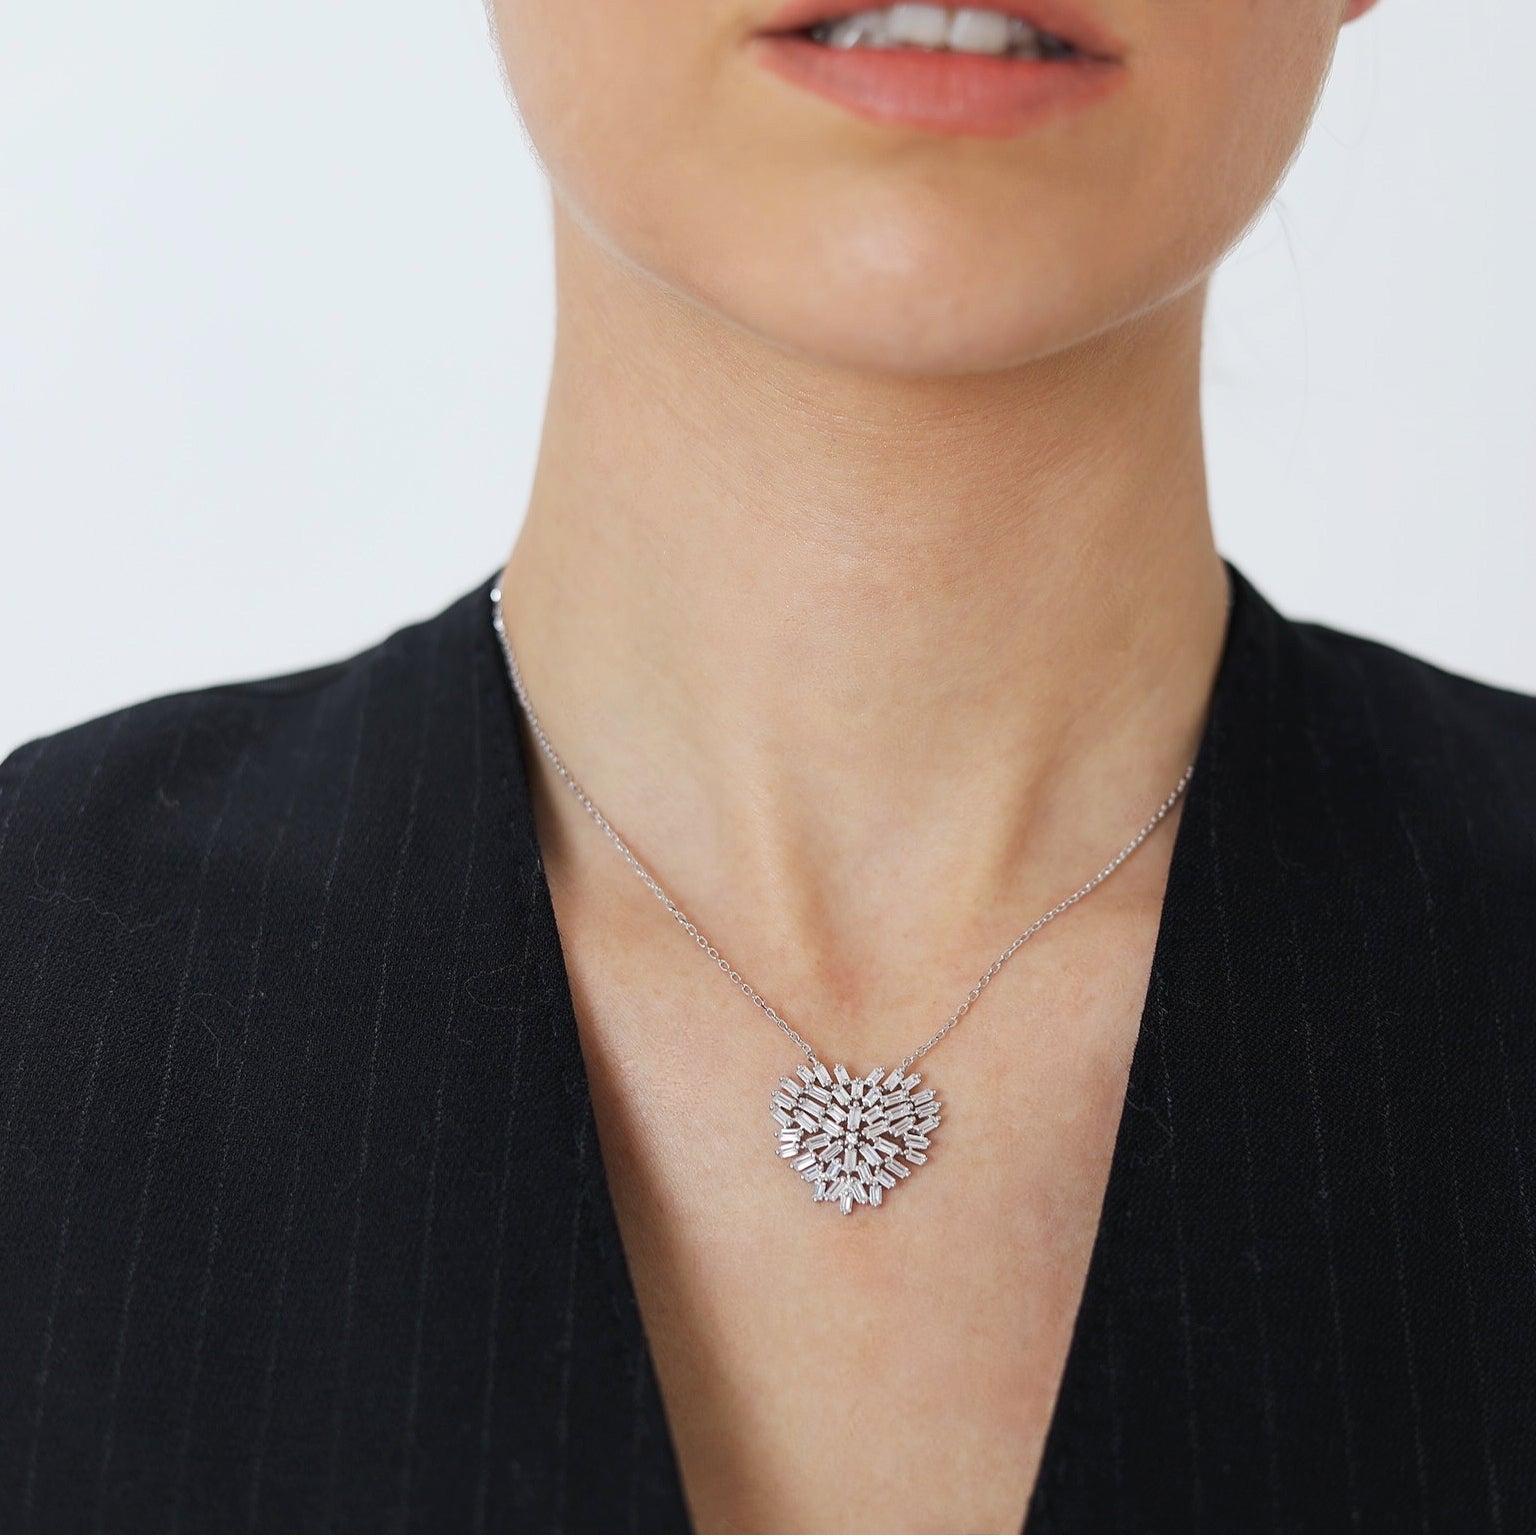 El Collar Cor es un símbolo eterno de amor y pureza. Con un diseño de corazón blanco, esta pieza atemporal lleva consigo una expresión única de elegancia y devoción.